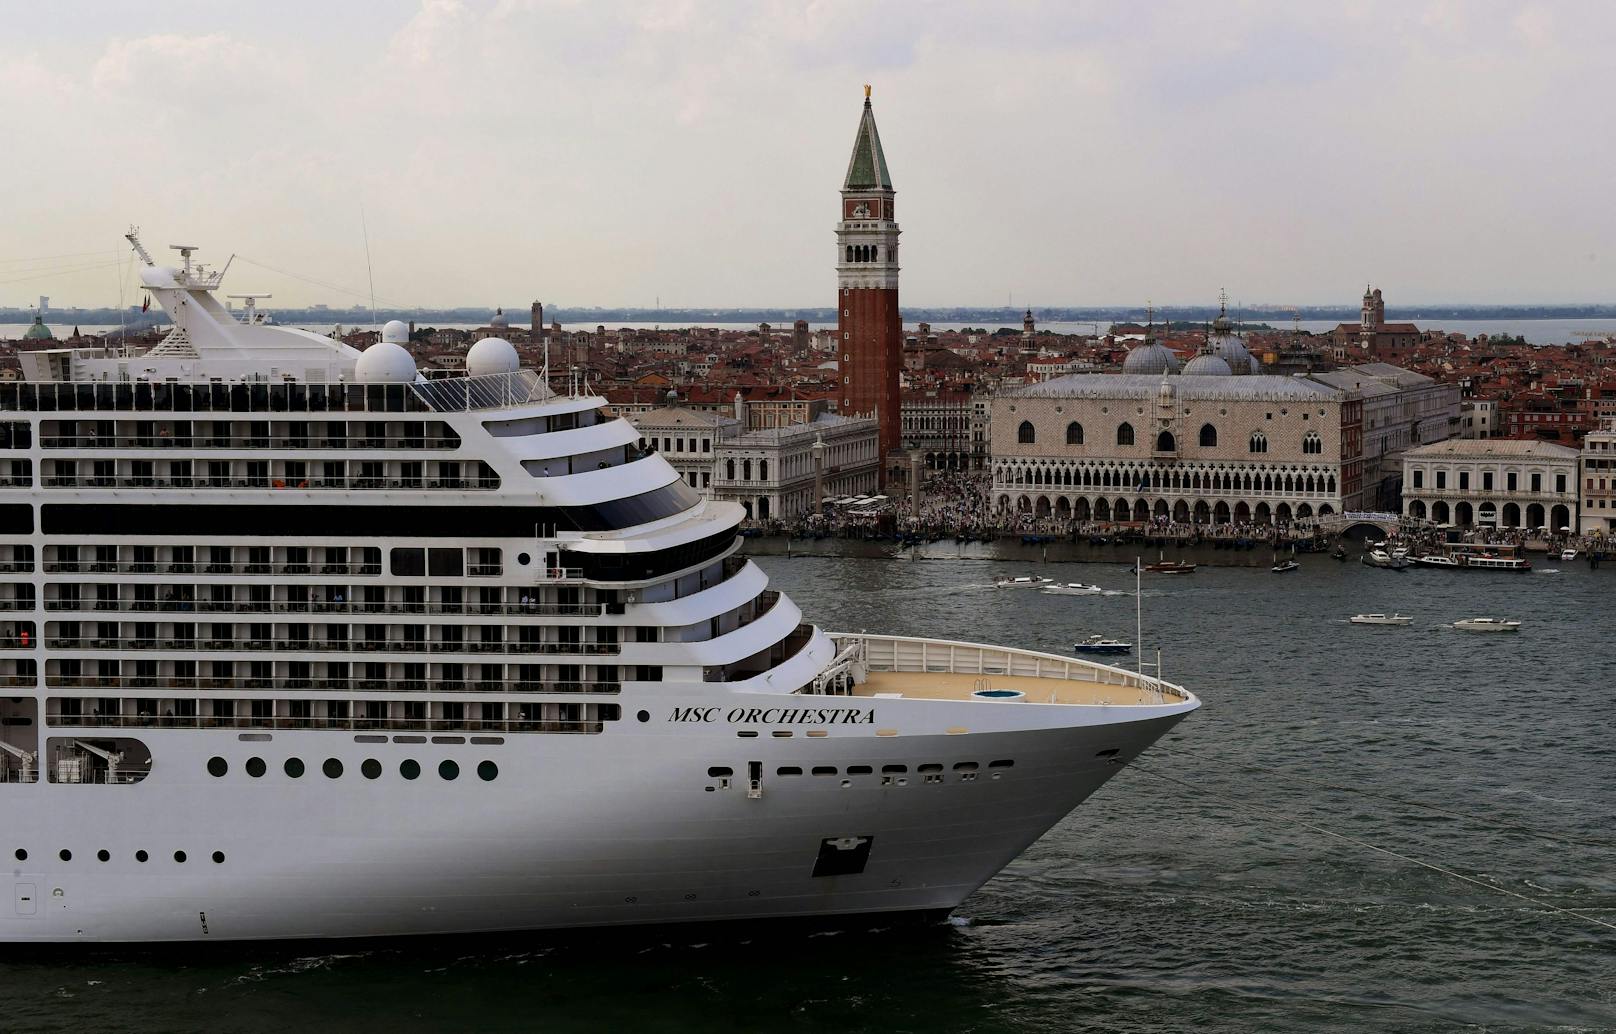 Venedig-Eintritt fix – so viel müssen Touristen zahlen